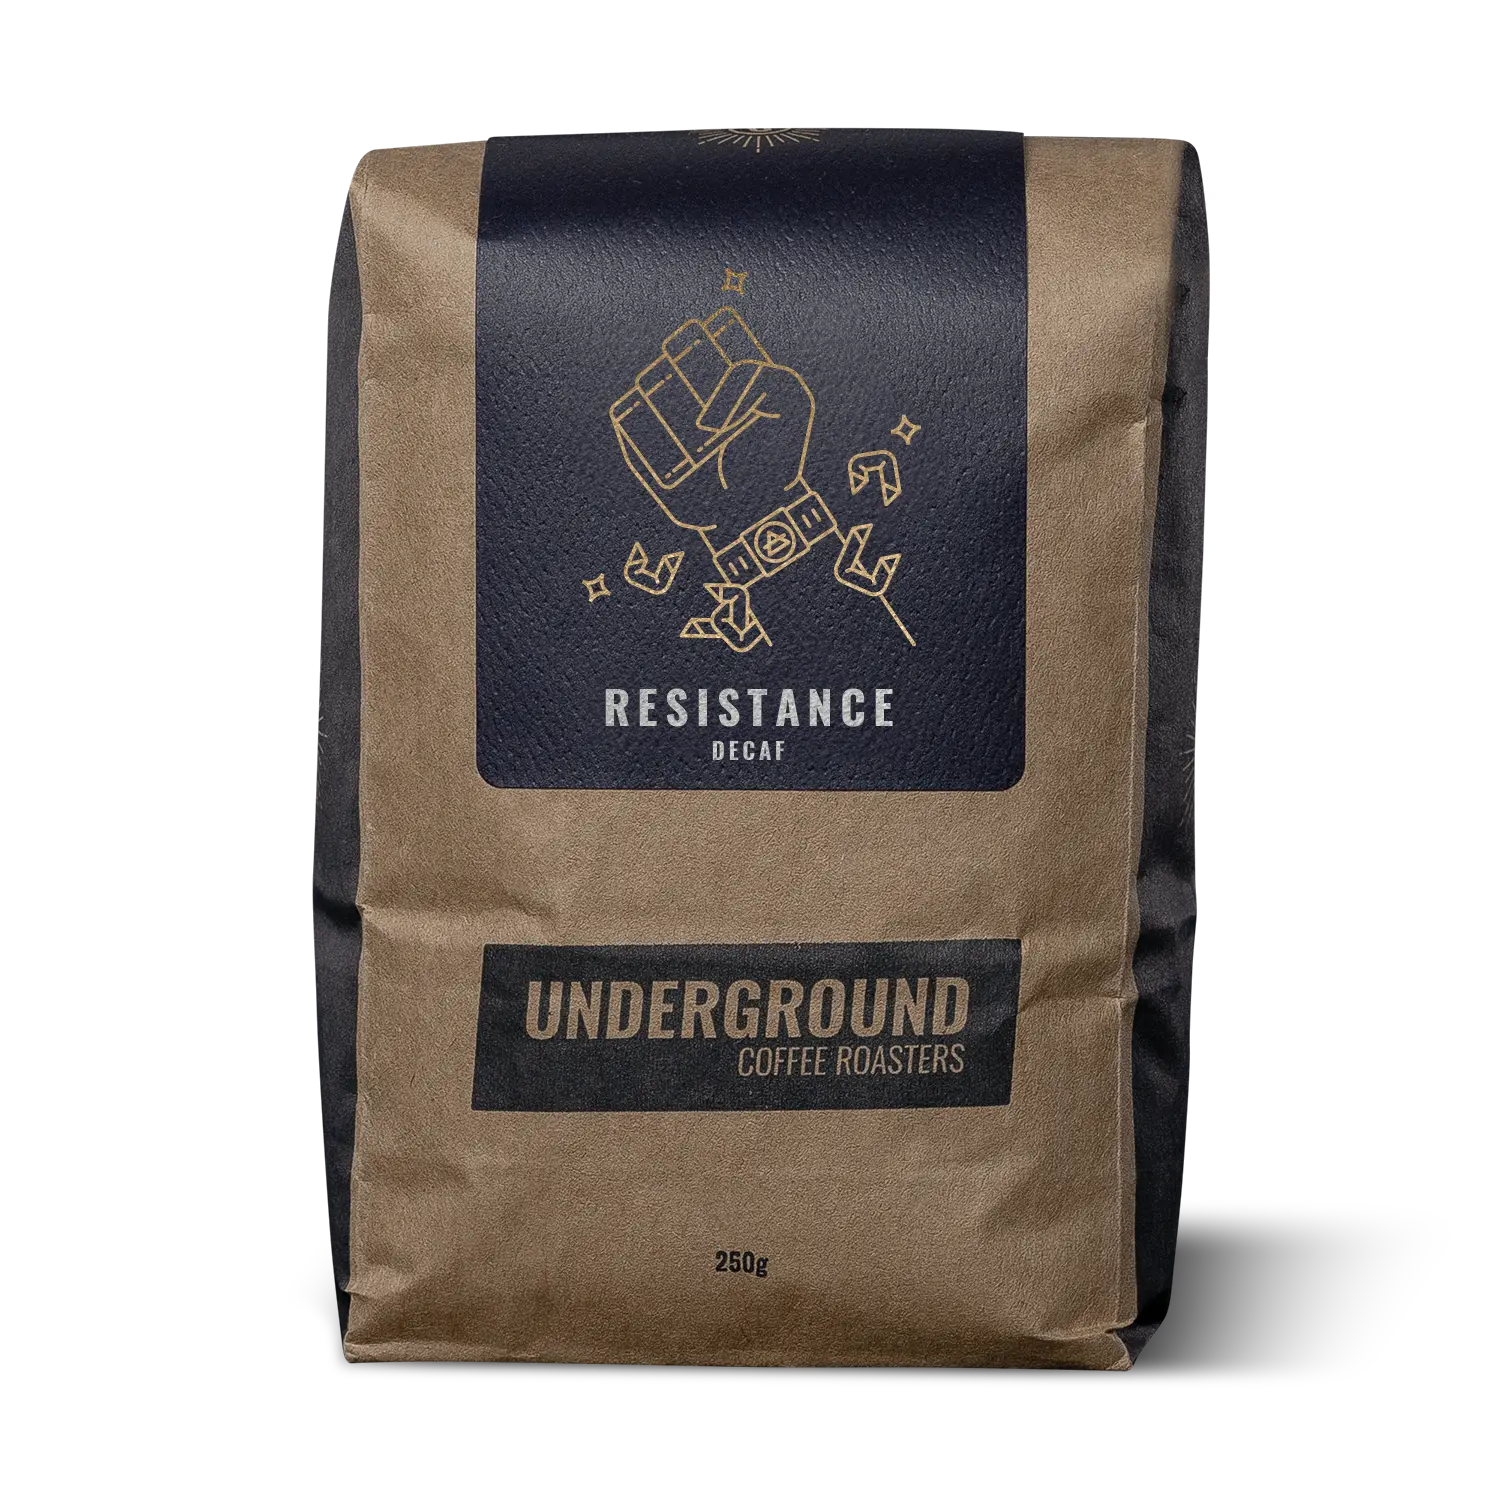 Underground Coffee Roasters Resistance Decaf